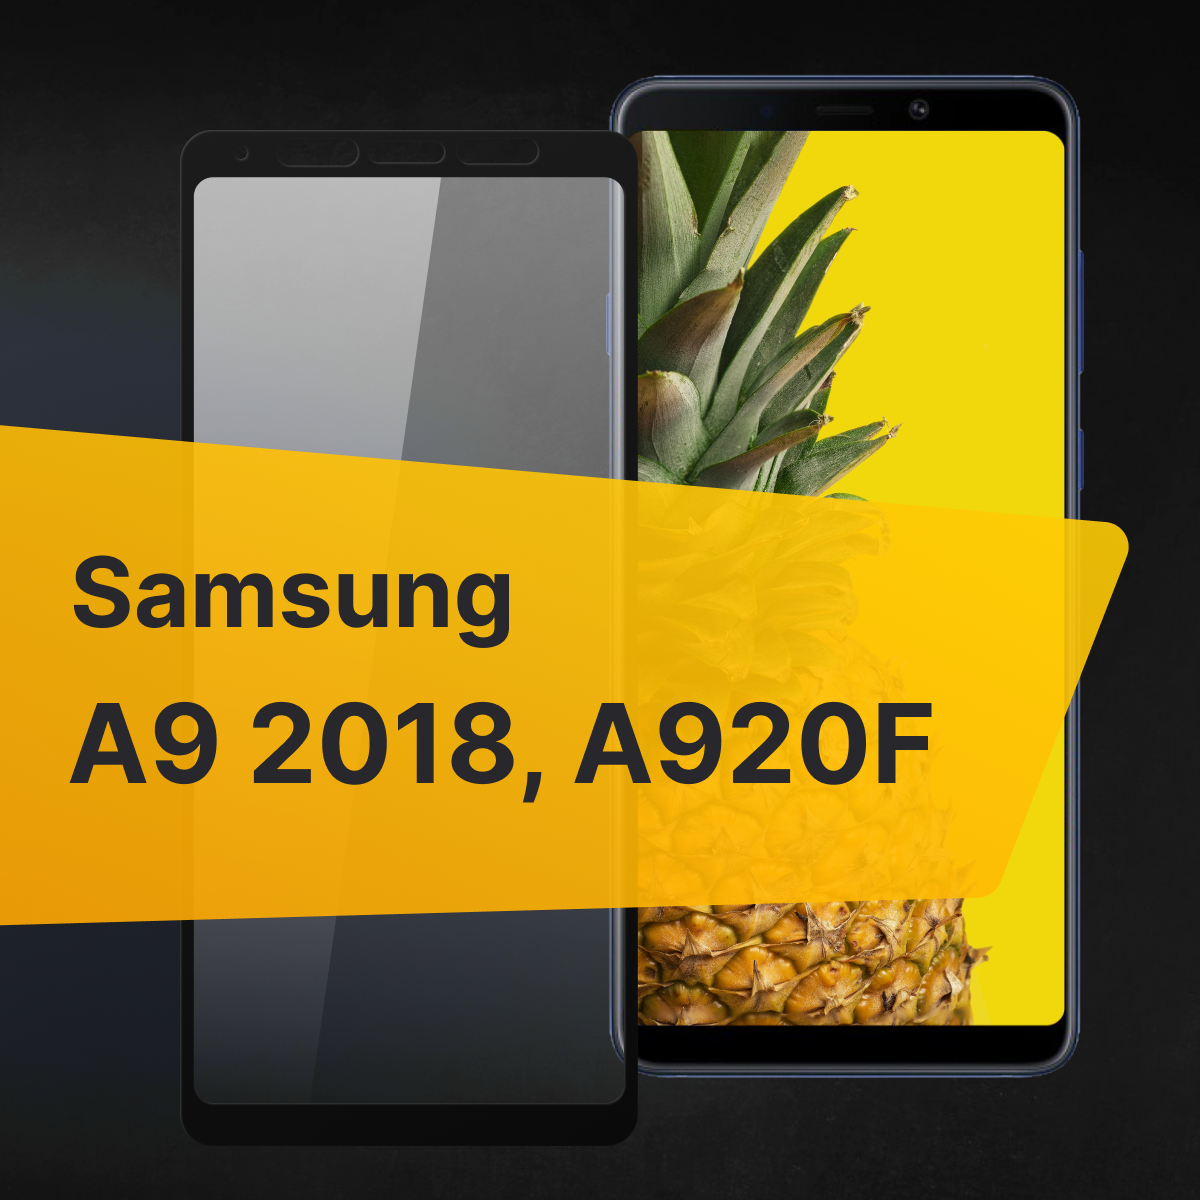 Противоударное защитное стекло для телефона Samsung Galaxy A9 2018 и A920F / Полноклеевое 3D стекло с олеофобным покрытием на смартфон Самсунг Галакси А9 2018 и А920Ф / С черной рамкой